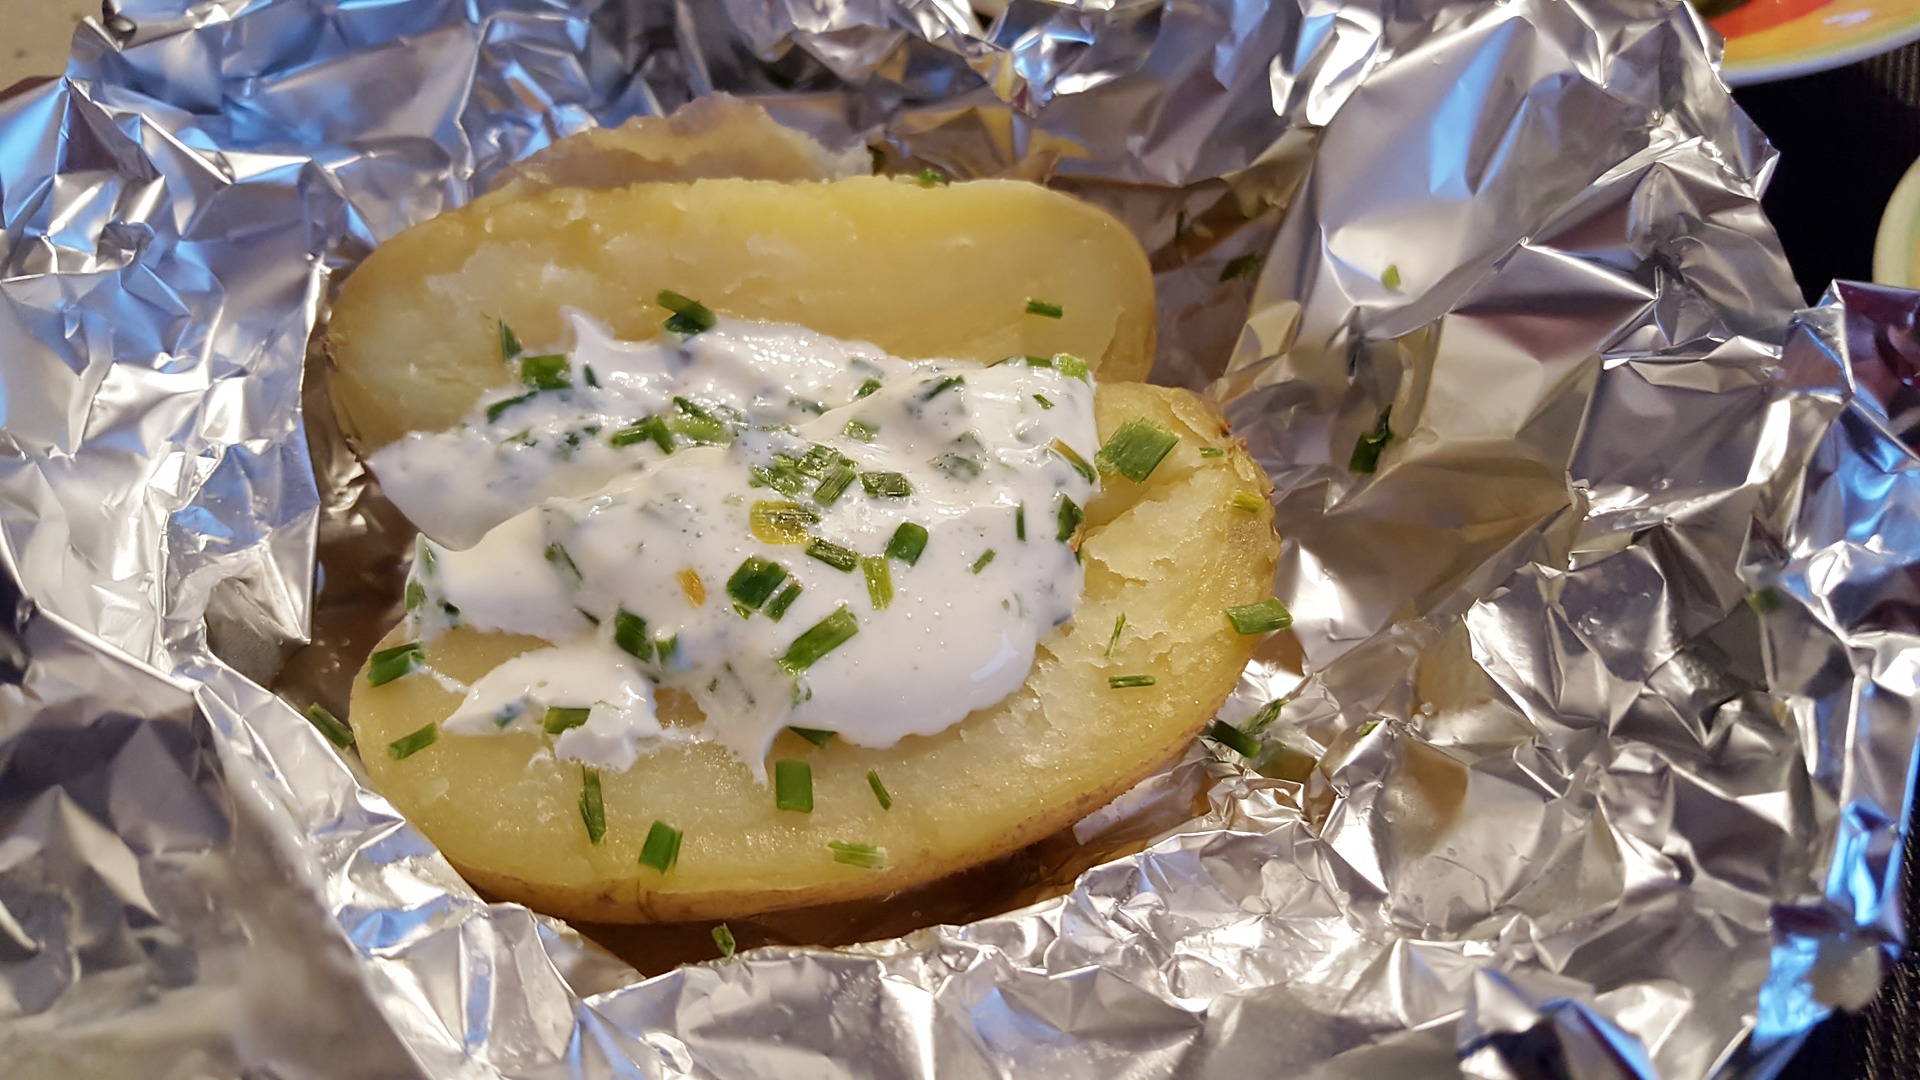 Patata Asada, patata al horno, patata asada con crema agria